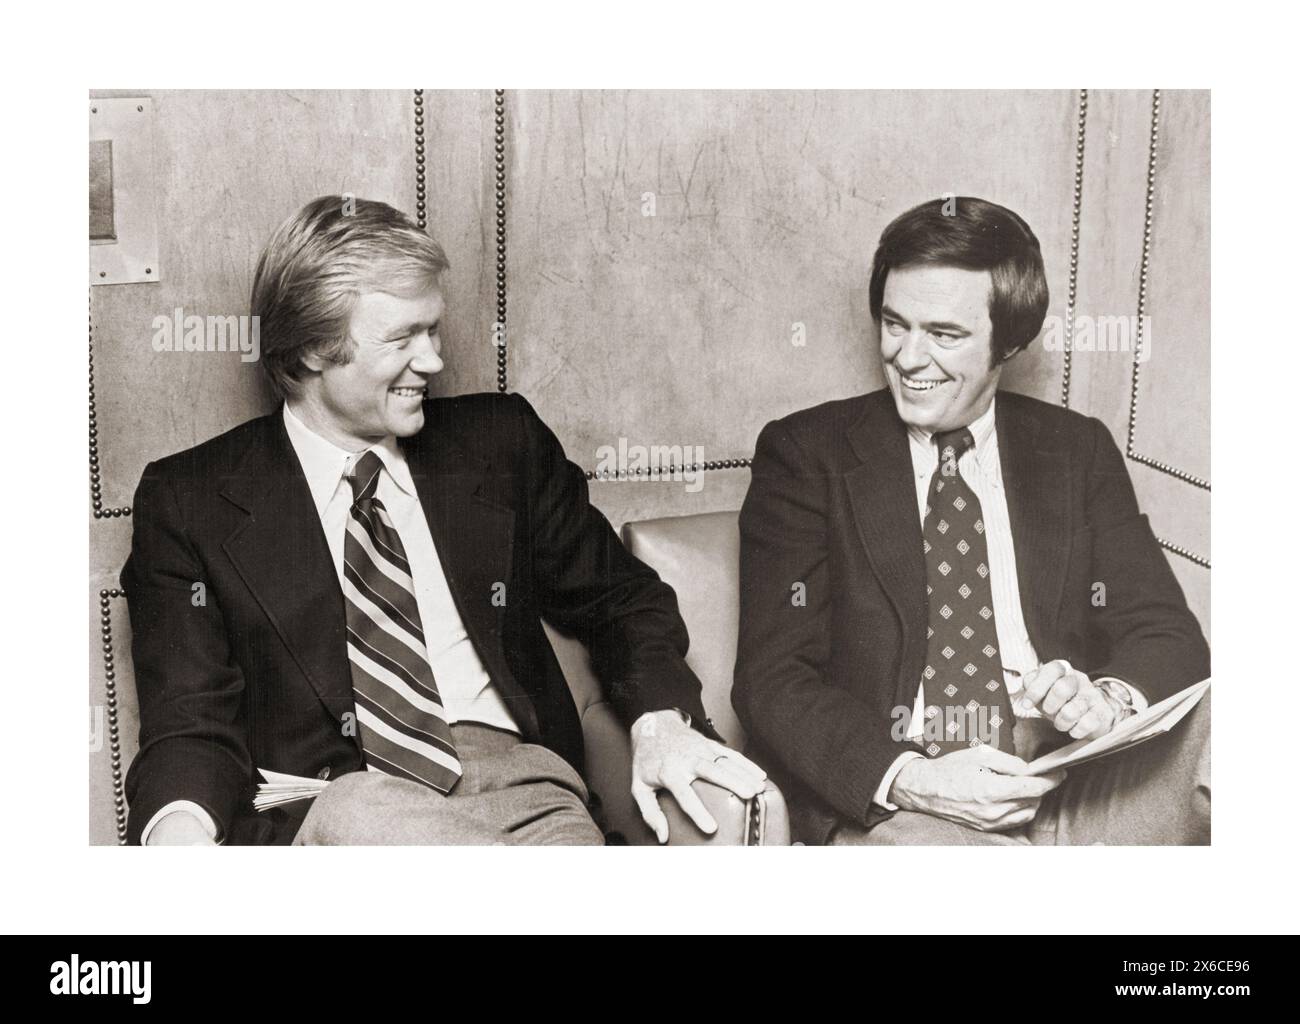 Una foto del 1979 dei giornalisti della NBC Chuck Scarborough e Jack Cafferty che condividono una risata. Presso gli studi della NBC al 30 Rock di Midtown Manhattan, New York City. Foto Stock